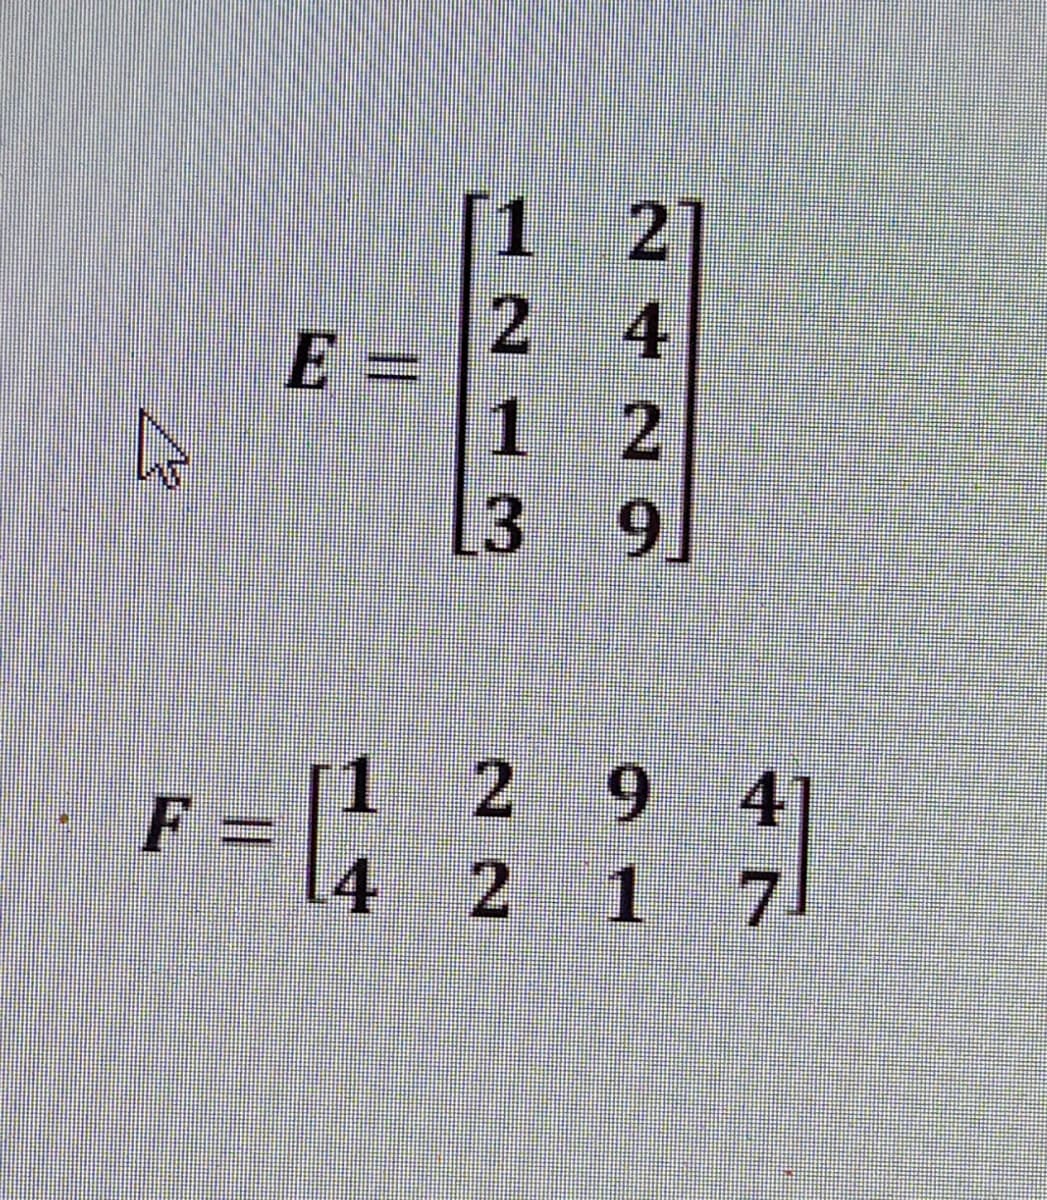 [1 2]
2 4
E =
1 2
.
3 9
[1 2 9
F
41
4 2 1 7
%3D
